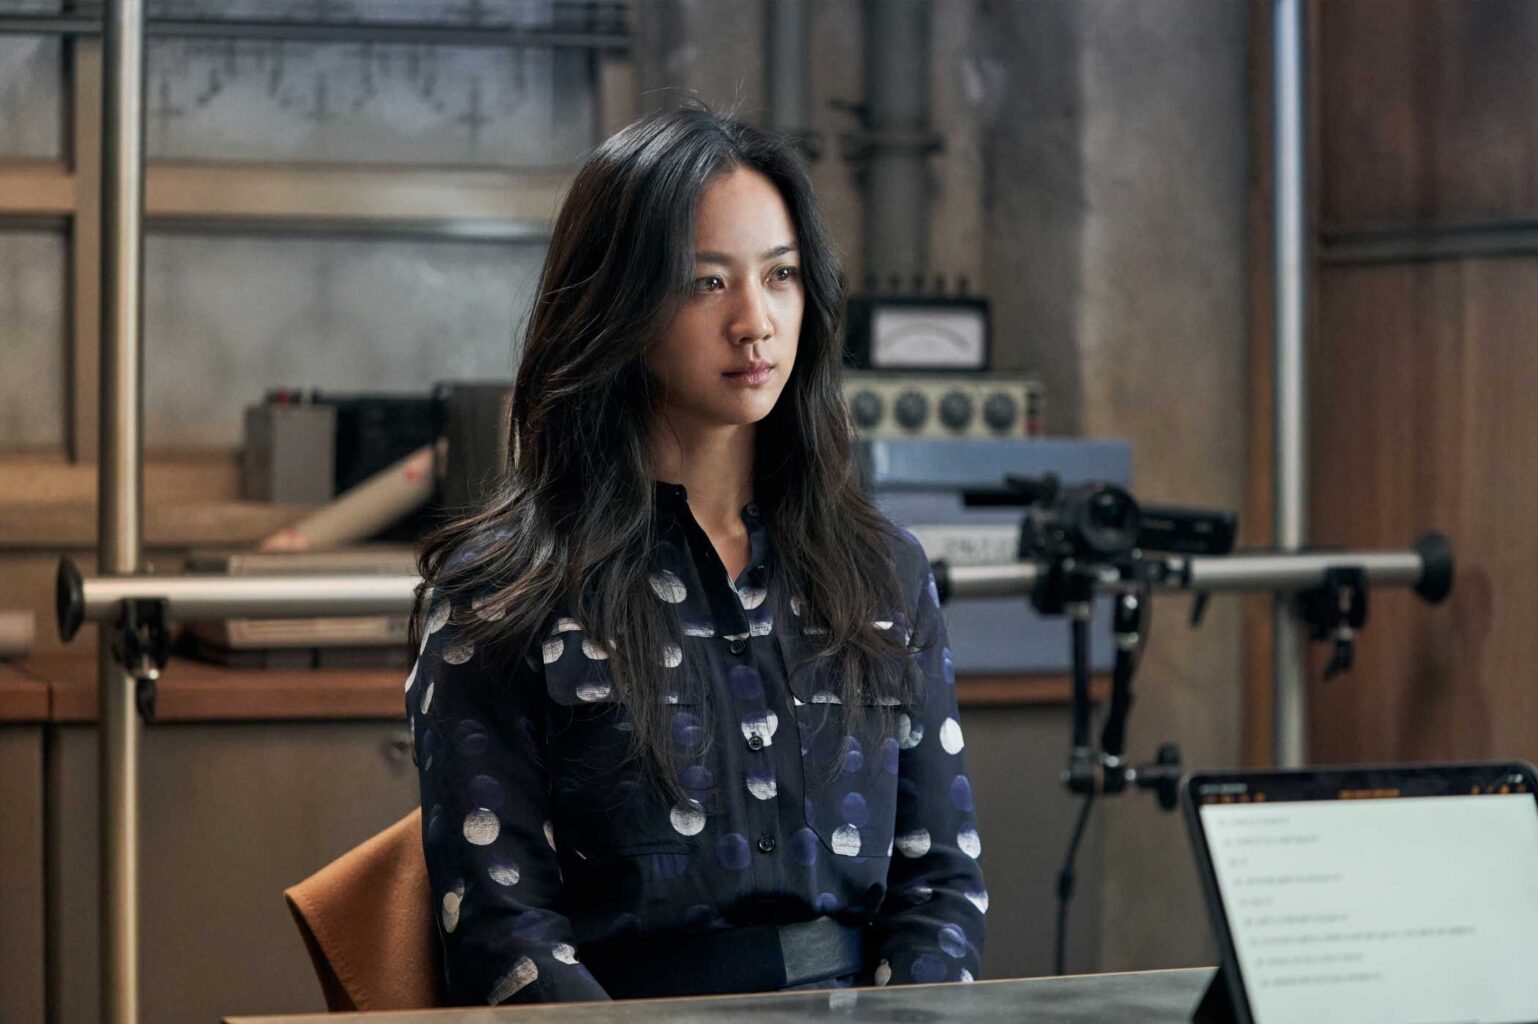 Trong phim Decision to leave, Thang Duy vào vai Seo Rae - góa phụ người Trung Quốc có lai lịch bí ẩn, là nghi can số một trong vụ án giết người.